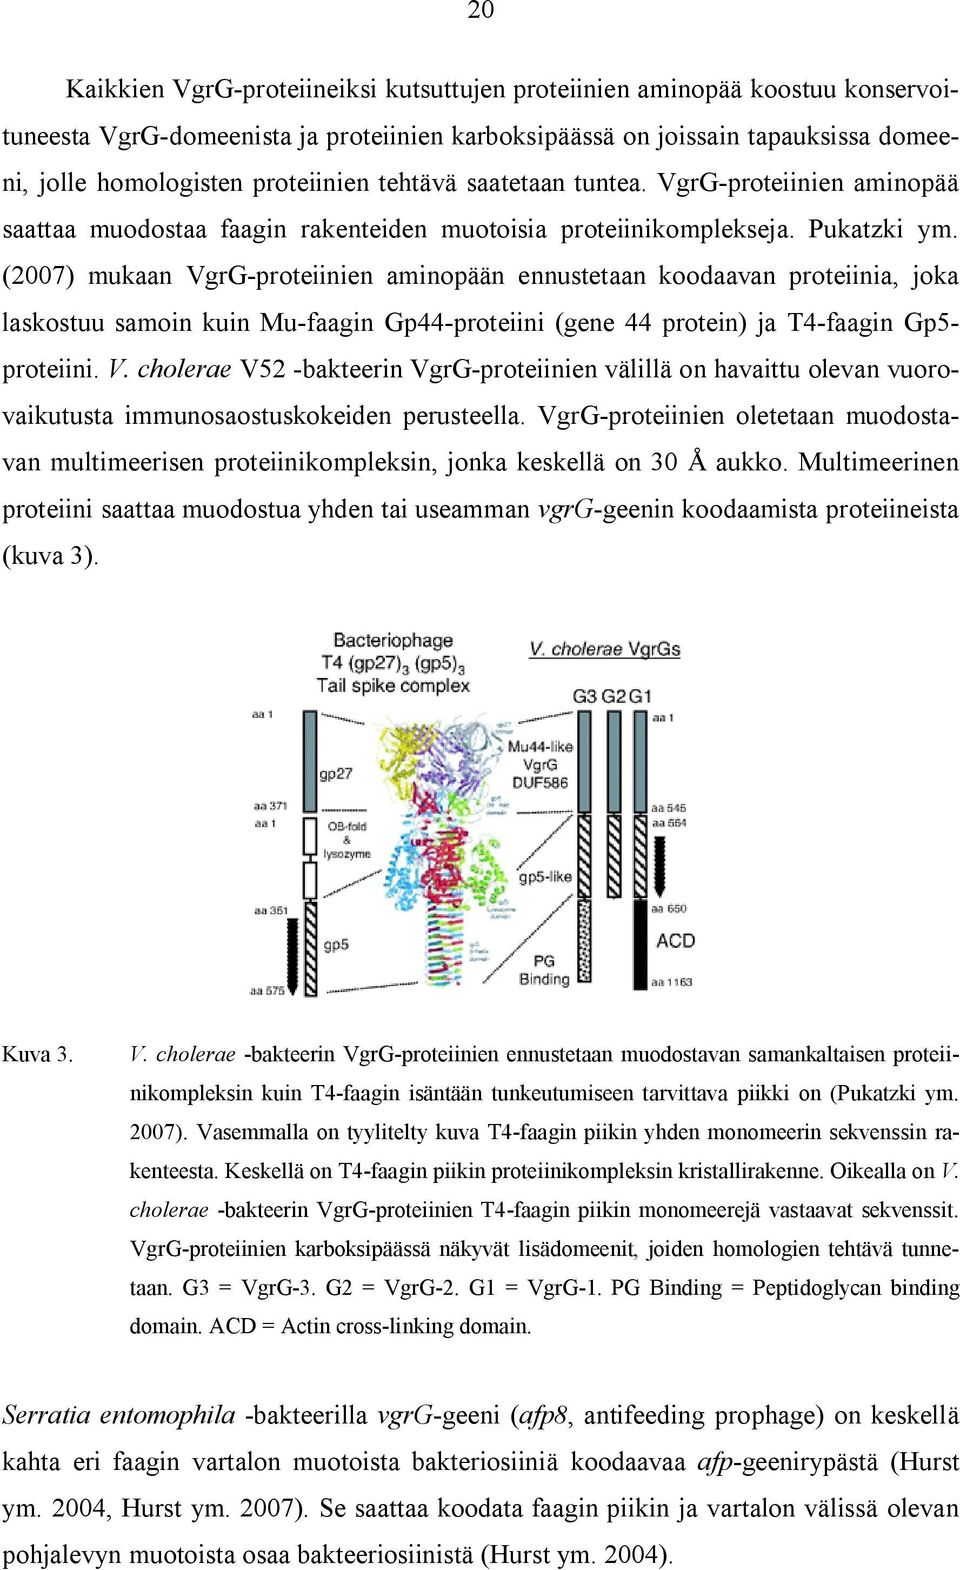 (2007) mukaan VgrG-proteiinien aminopään ennustetaan koodaavan proteiinia, joka laskostuu samoin kuin Mu-faagin Gp44-proteiini (gene 44 protein) ja T4-faagin Gp5- proteiini. V. cholerae V52 -bakteerin VgrG-proteiinien välillä on havaittu olevan vuorovaikutusta immunosaostuskokeiden perusteella.